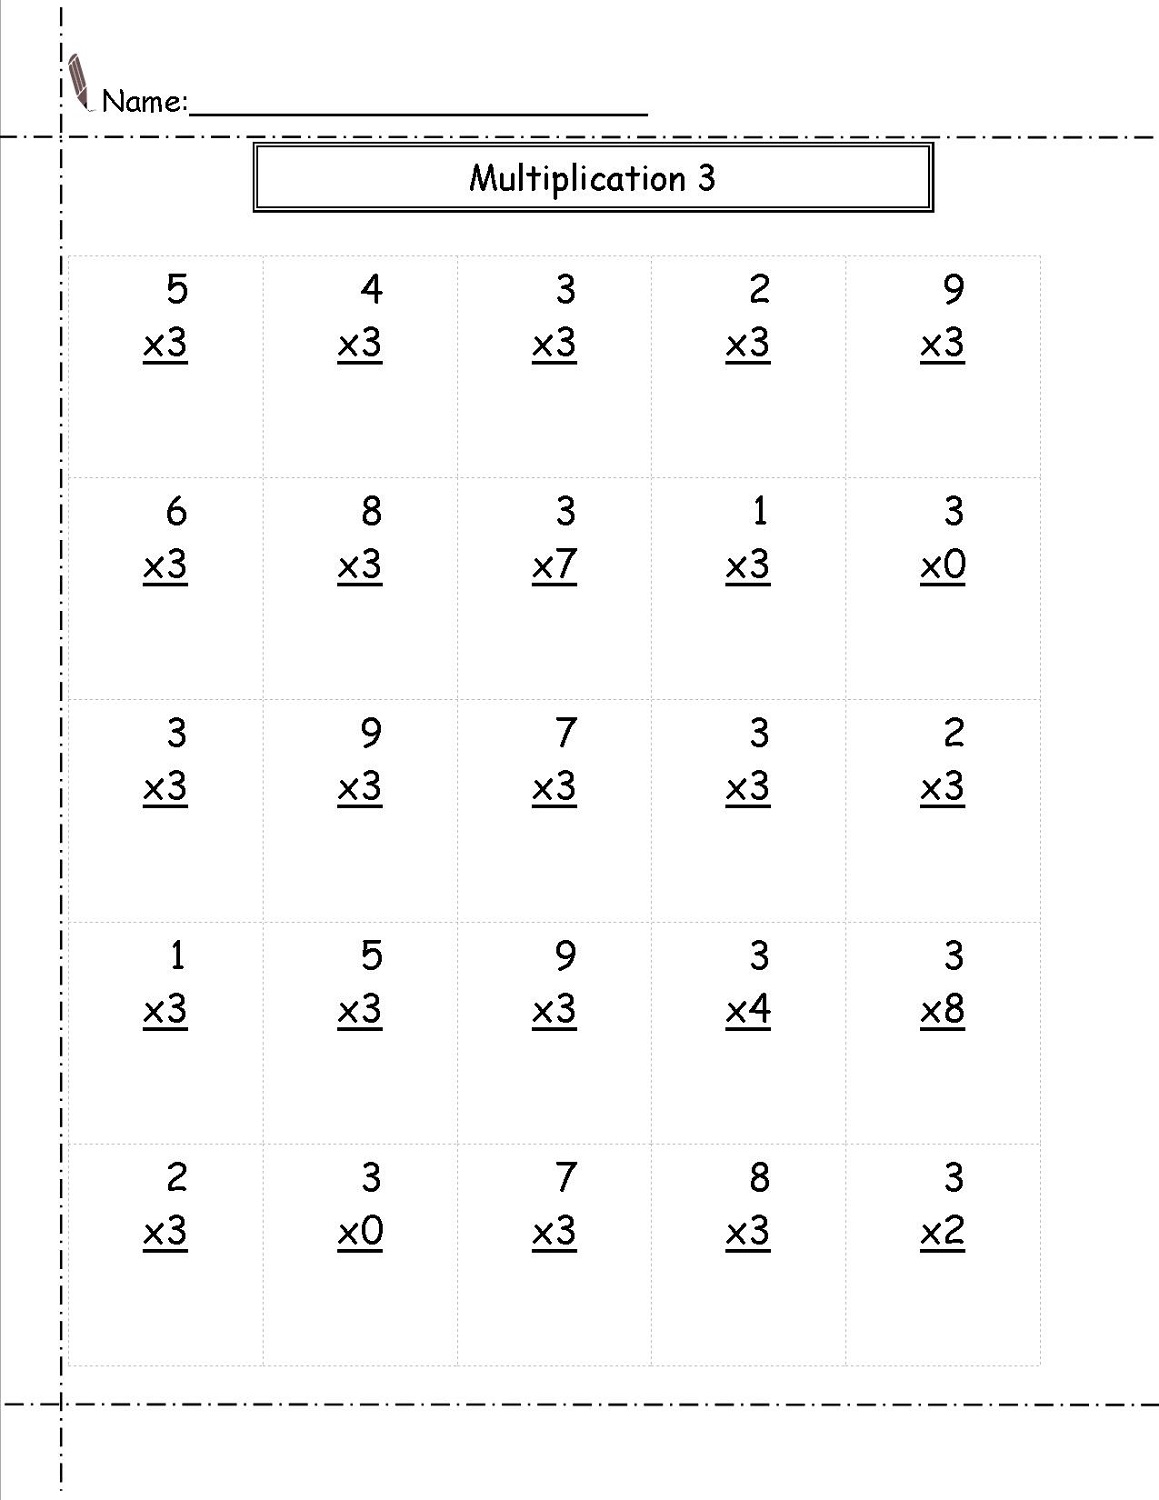 3 times table worksheets preschool